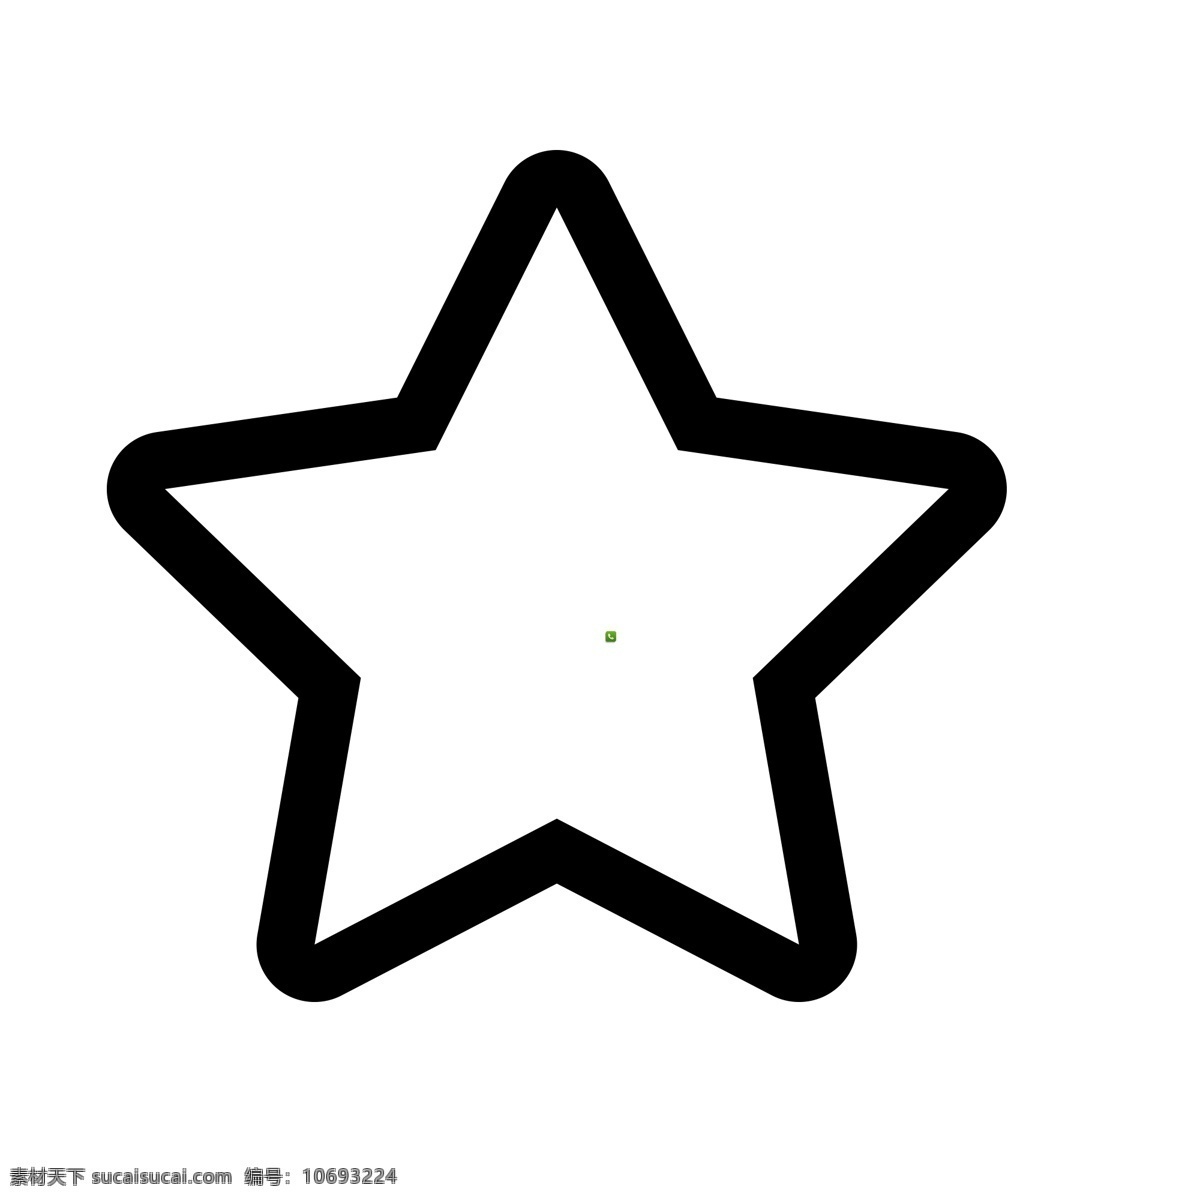 扁平化五角星 收藏图标 扁平化ui ui图标 手机图标 界面ui 网页ui h5图标